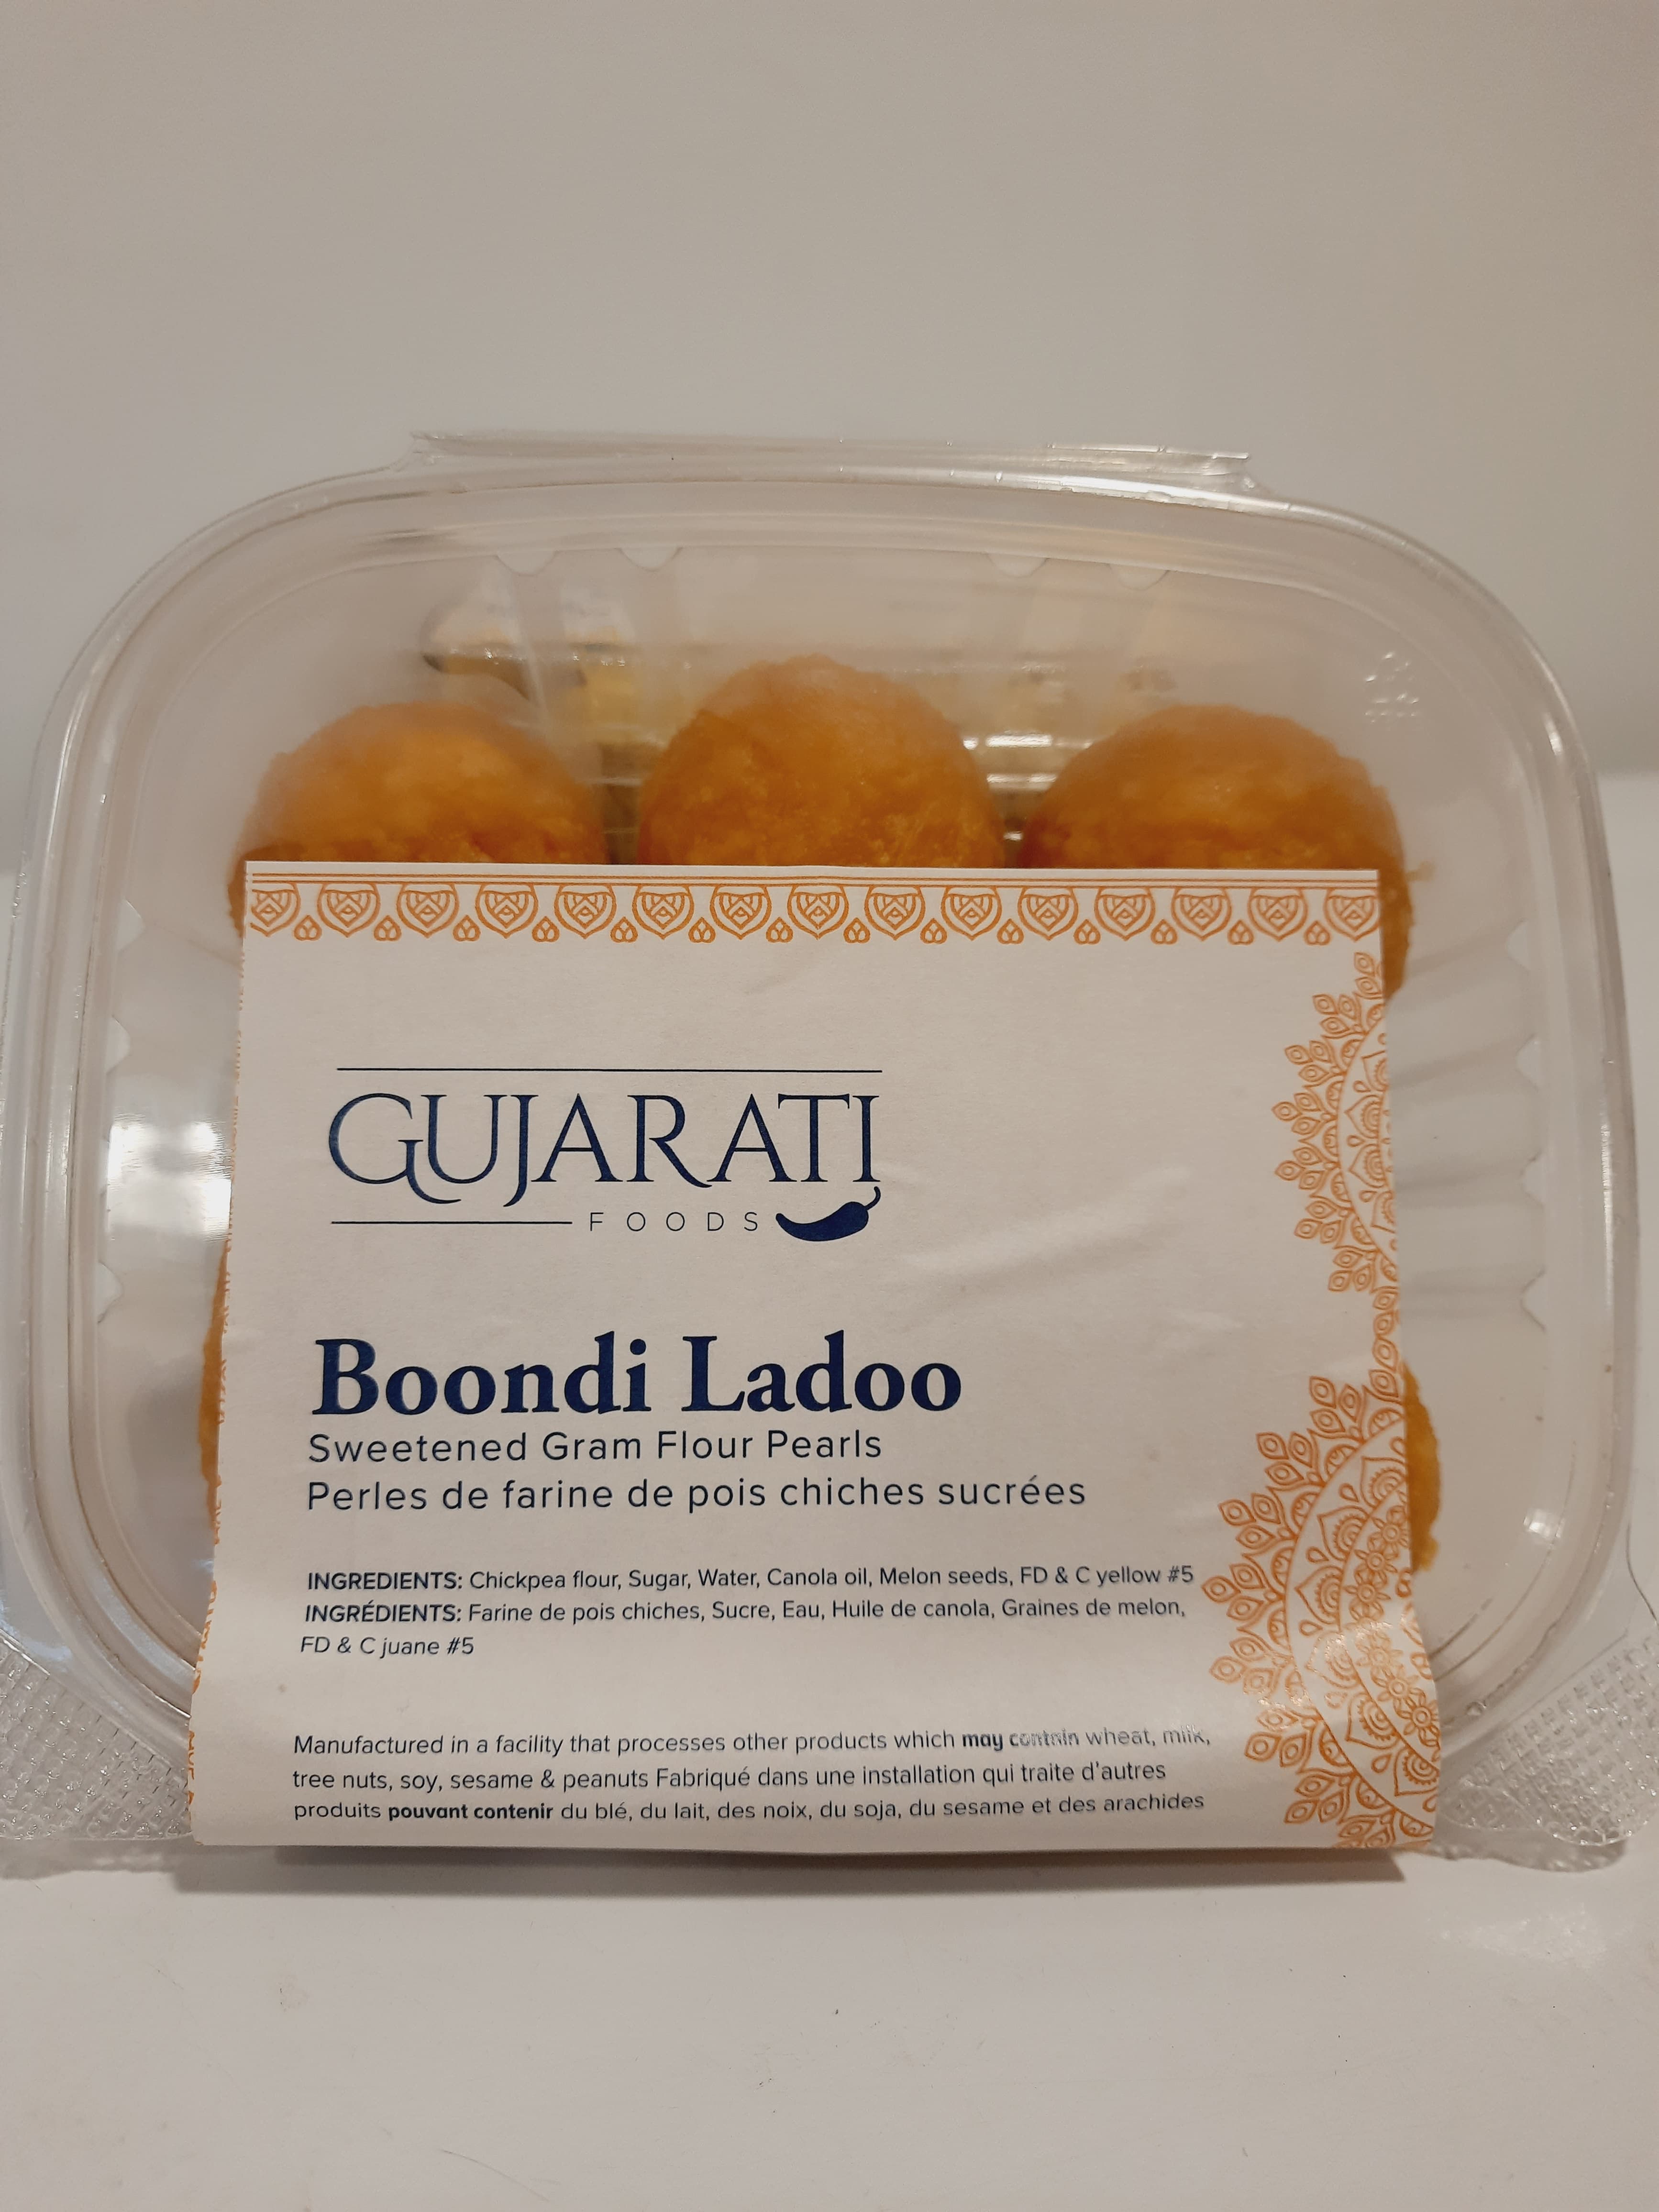 Gujarati Foods - Boondi Ladoo 400g